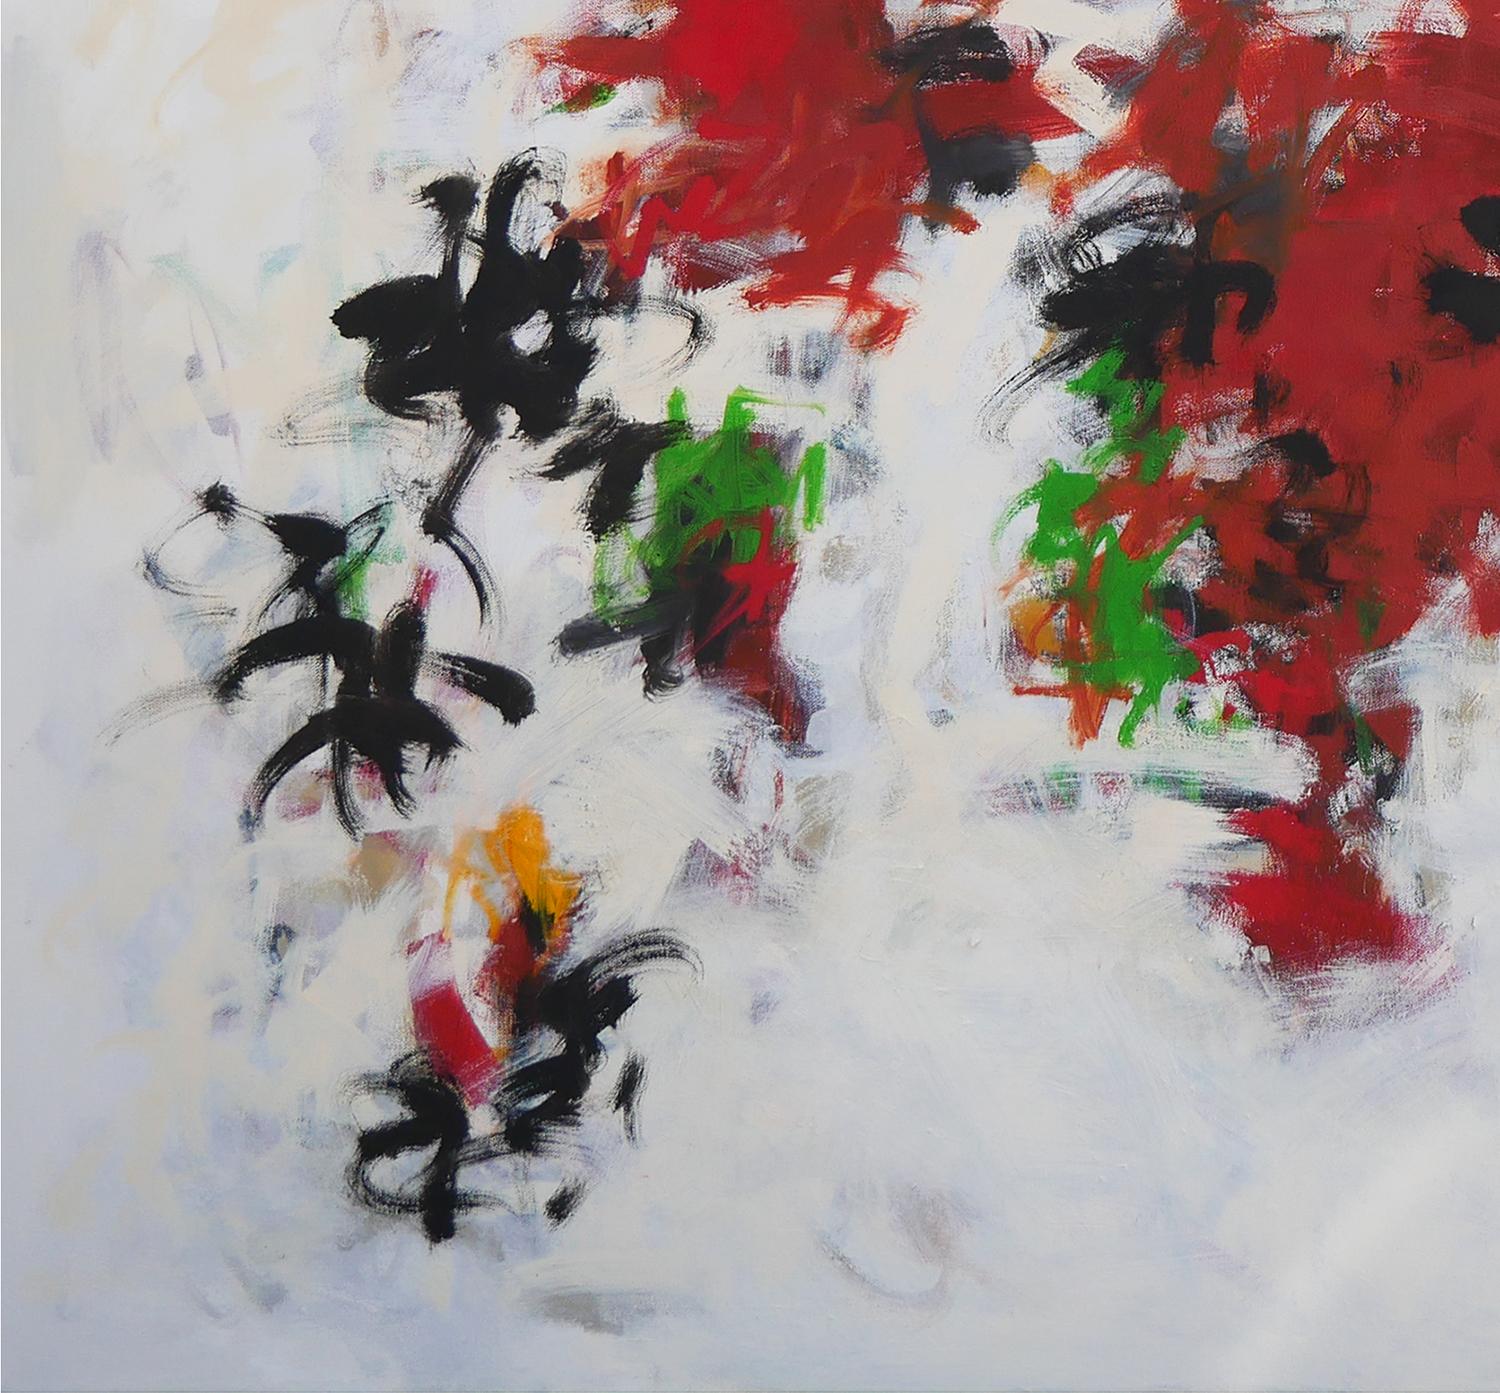 Peinture expressionniste abstraite rouge, noire et verte de l'artiste texan Gerald Syler. L'œuvre présente une composition équilibrée de grands coups de pinceau colorés, noirs et rouges, avec des accents verts et jaunes. Signé, titré et daté par